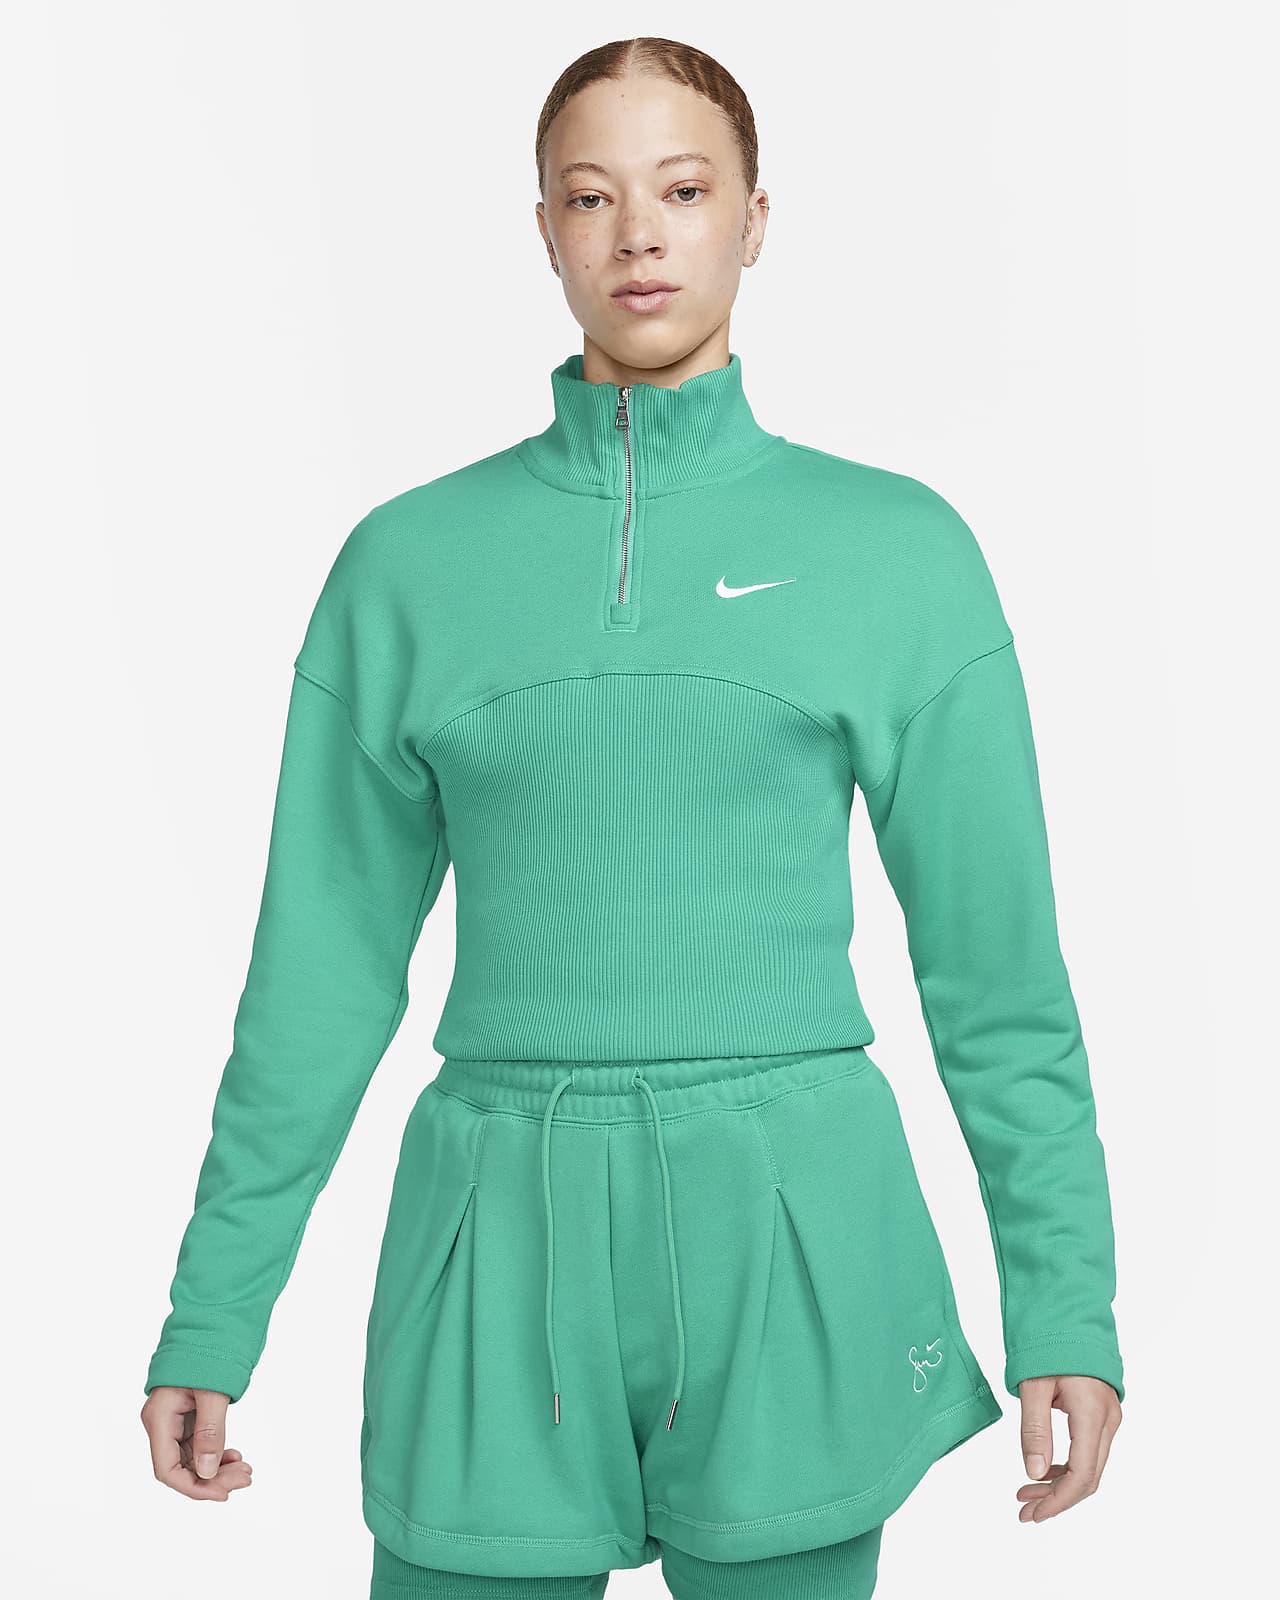 Serena Williams Design Crew Women's 1/4-Zip Fleece Top.